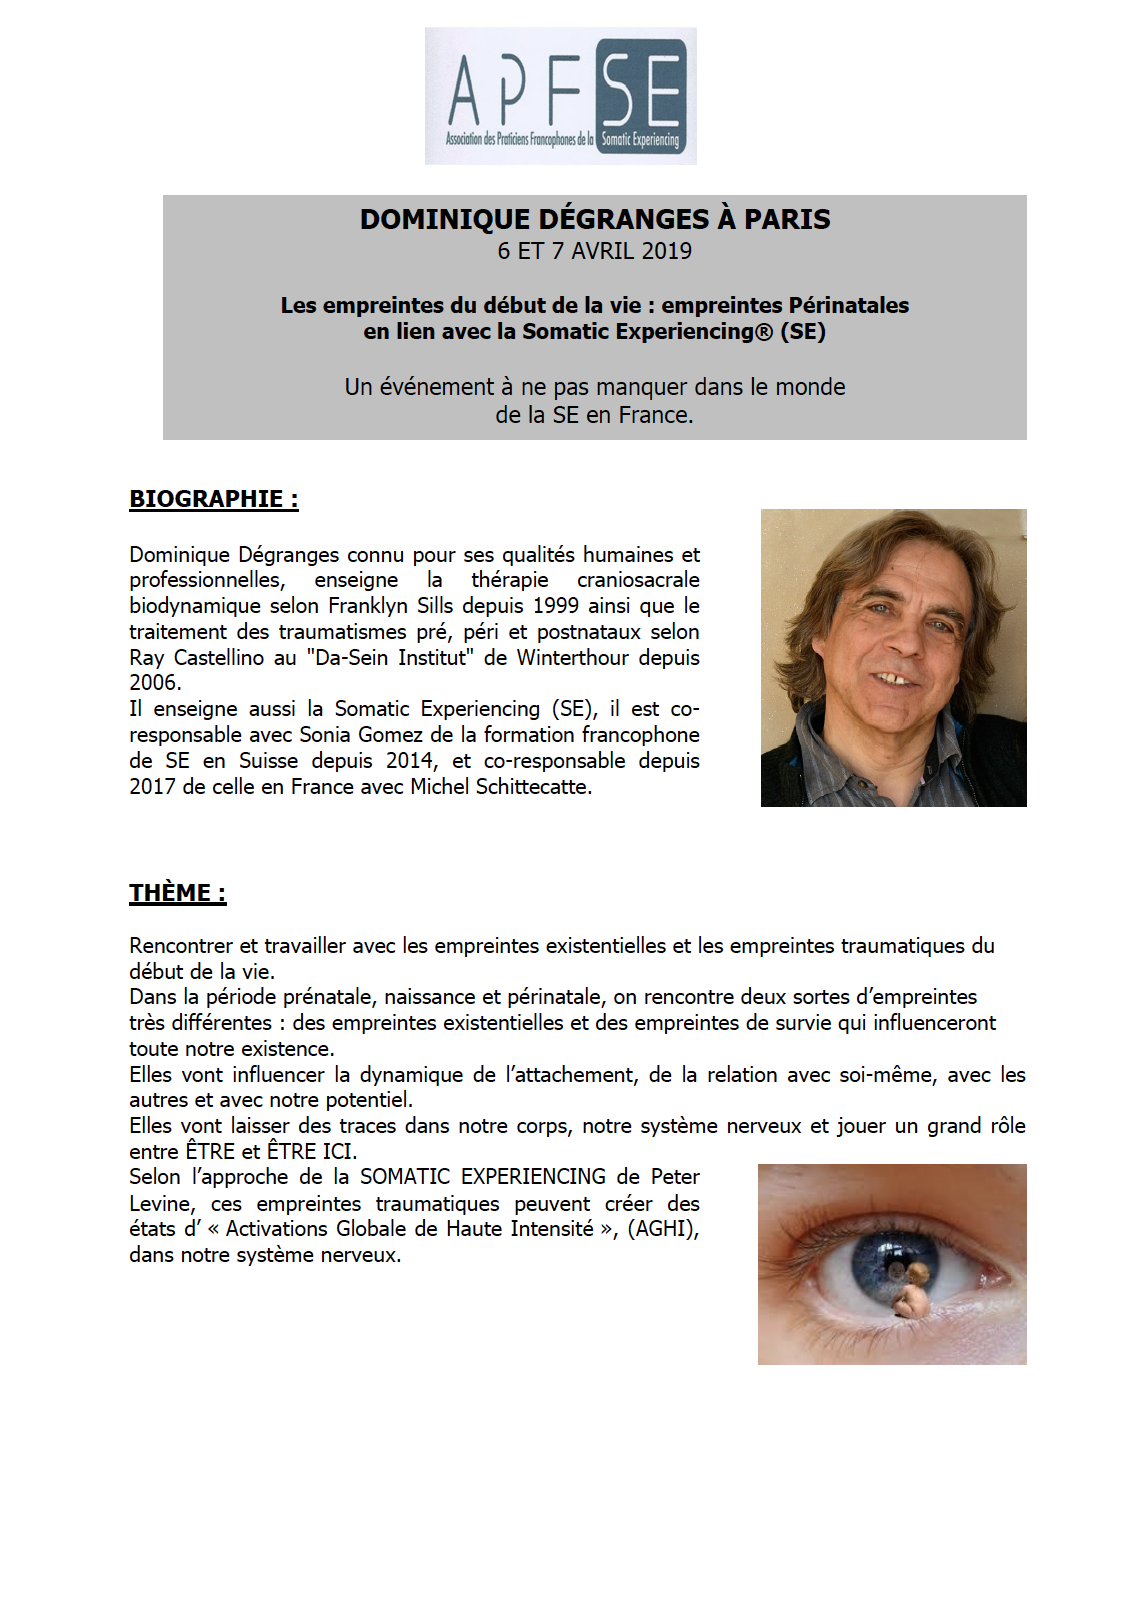 STAGE COMPLET – Formation de Dominique Dégranges à Paris les 6 et 7 avril 2019